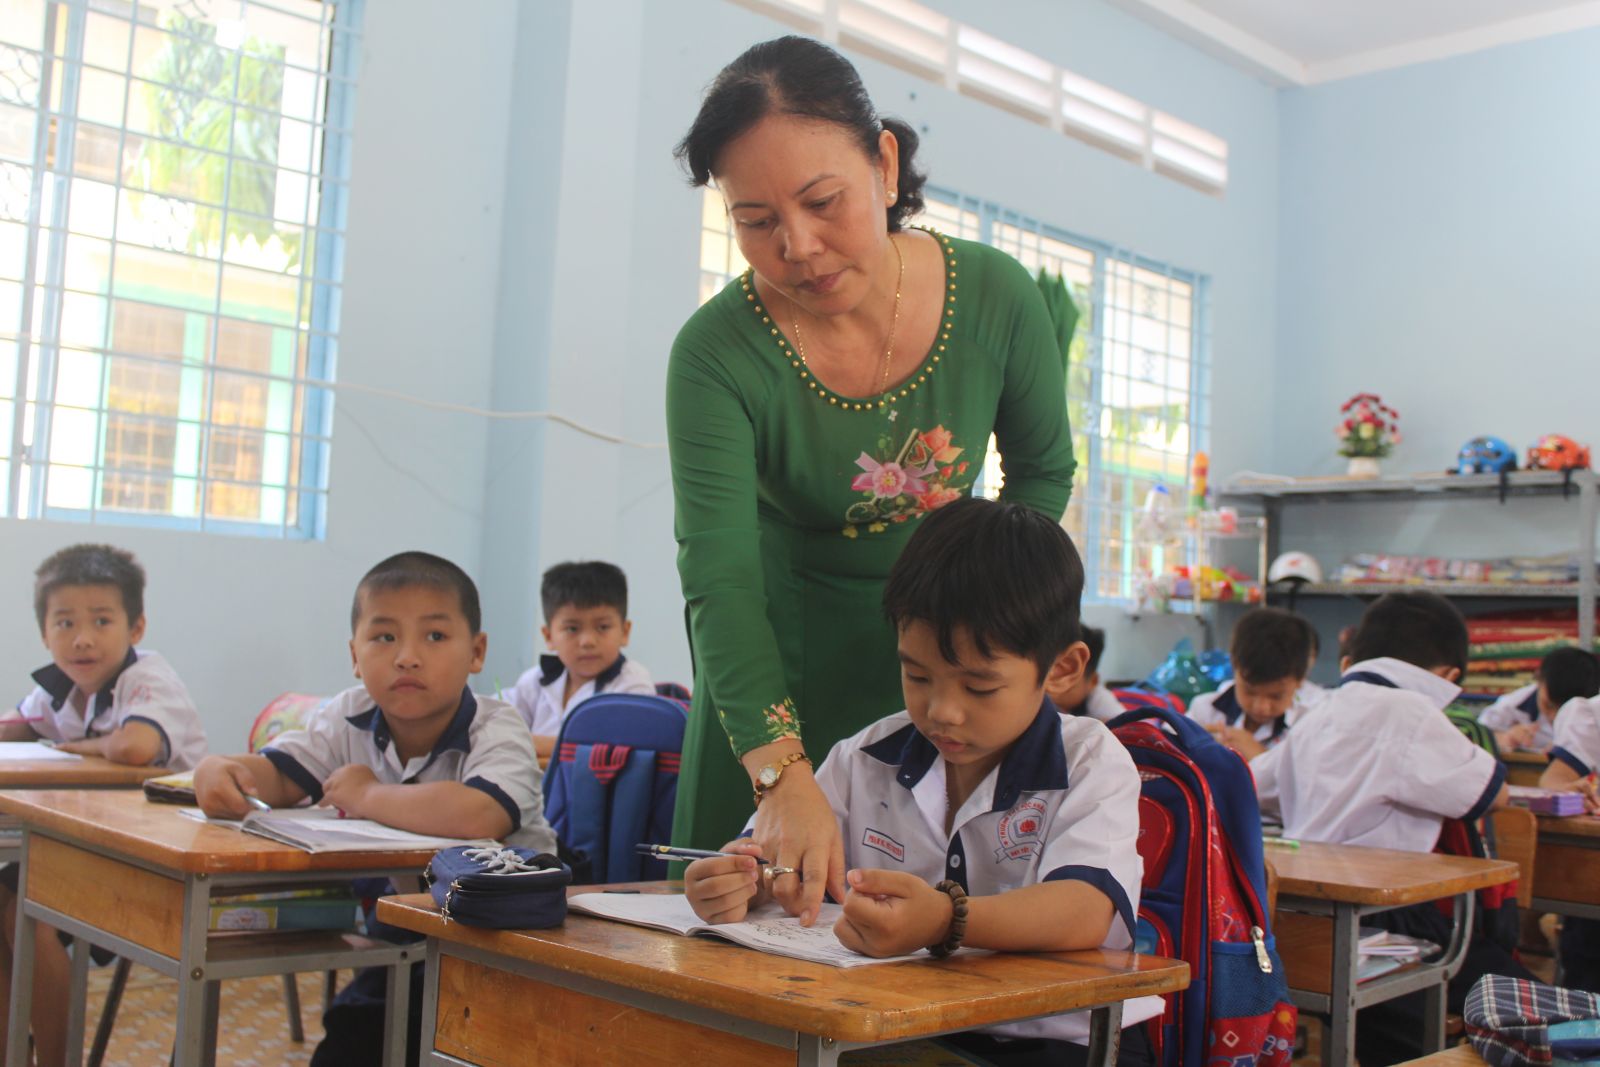 Việc sáp nhập trường tại huyện Vĩnh Hưng luôn nhận được sự đồng tình, hưởng ứng của cán bộ, giáo viên, nhân viên, phụ huynh và học sinh